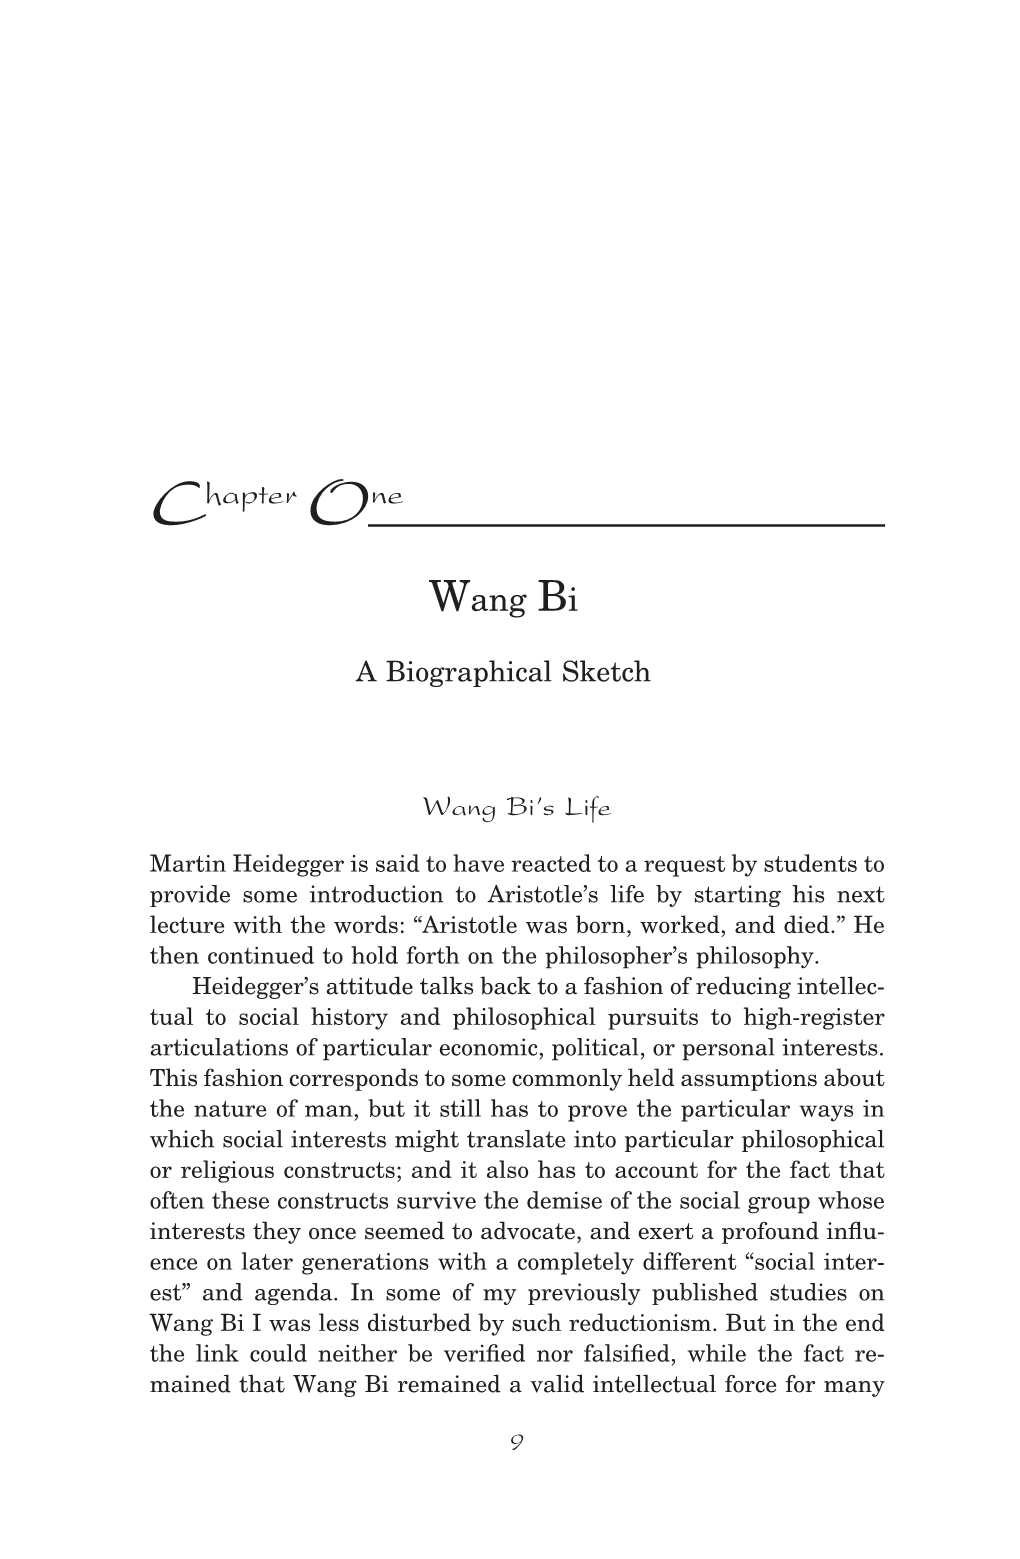 Chapter One Wang Bi